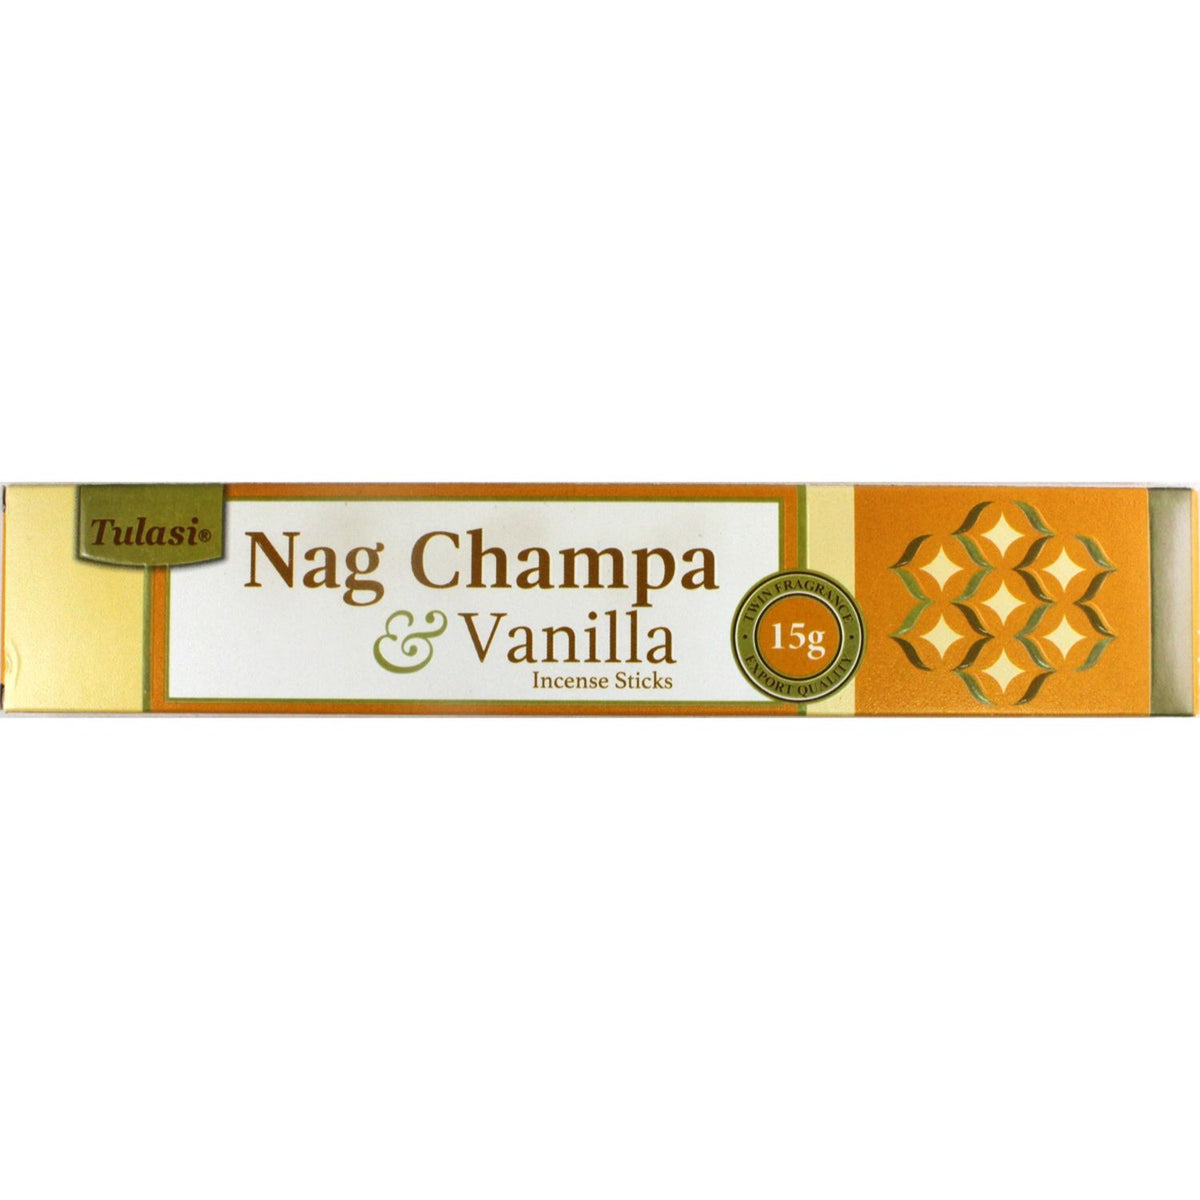 Nag Champa Incense Sticks by Tulasi